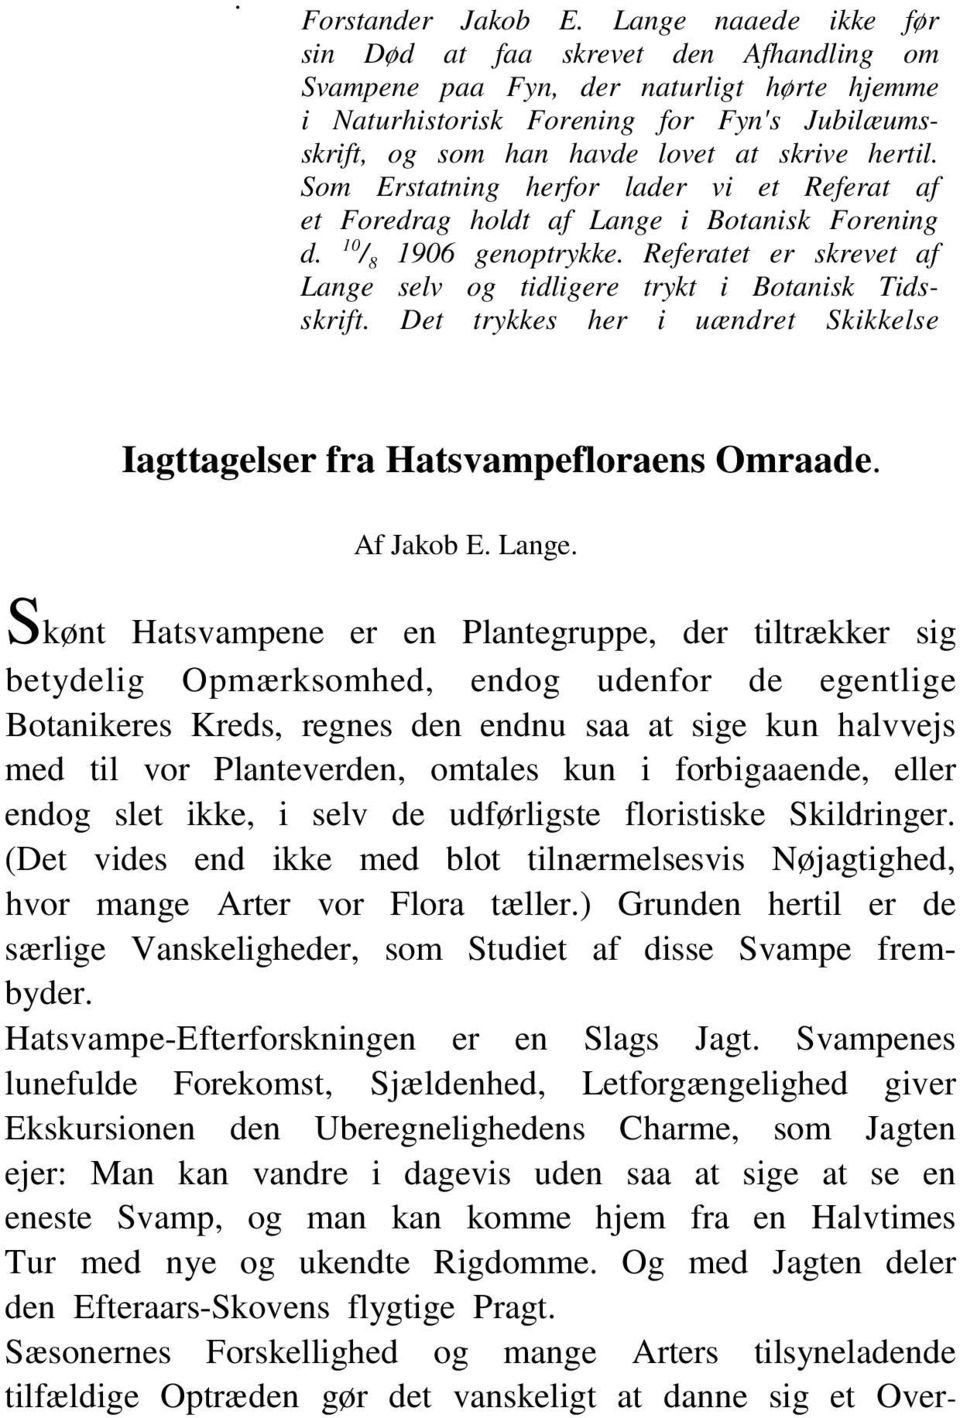 hertil. Som Erstatning herfor lader vi et Referat af et Foredrag holdt af Lange i Botanisk Forening d. 10 / 8 1906 genoptrykke.